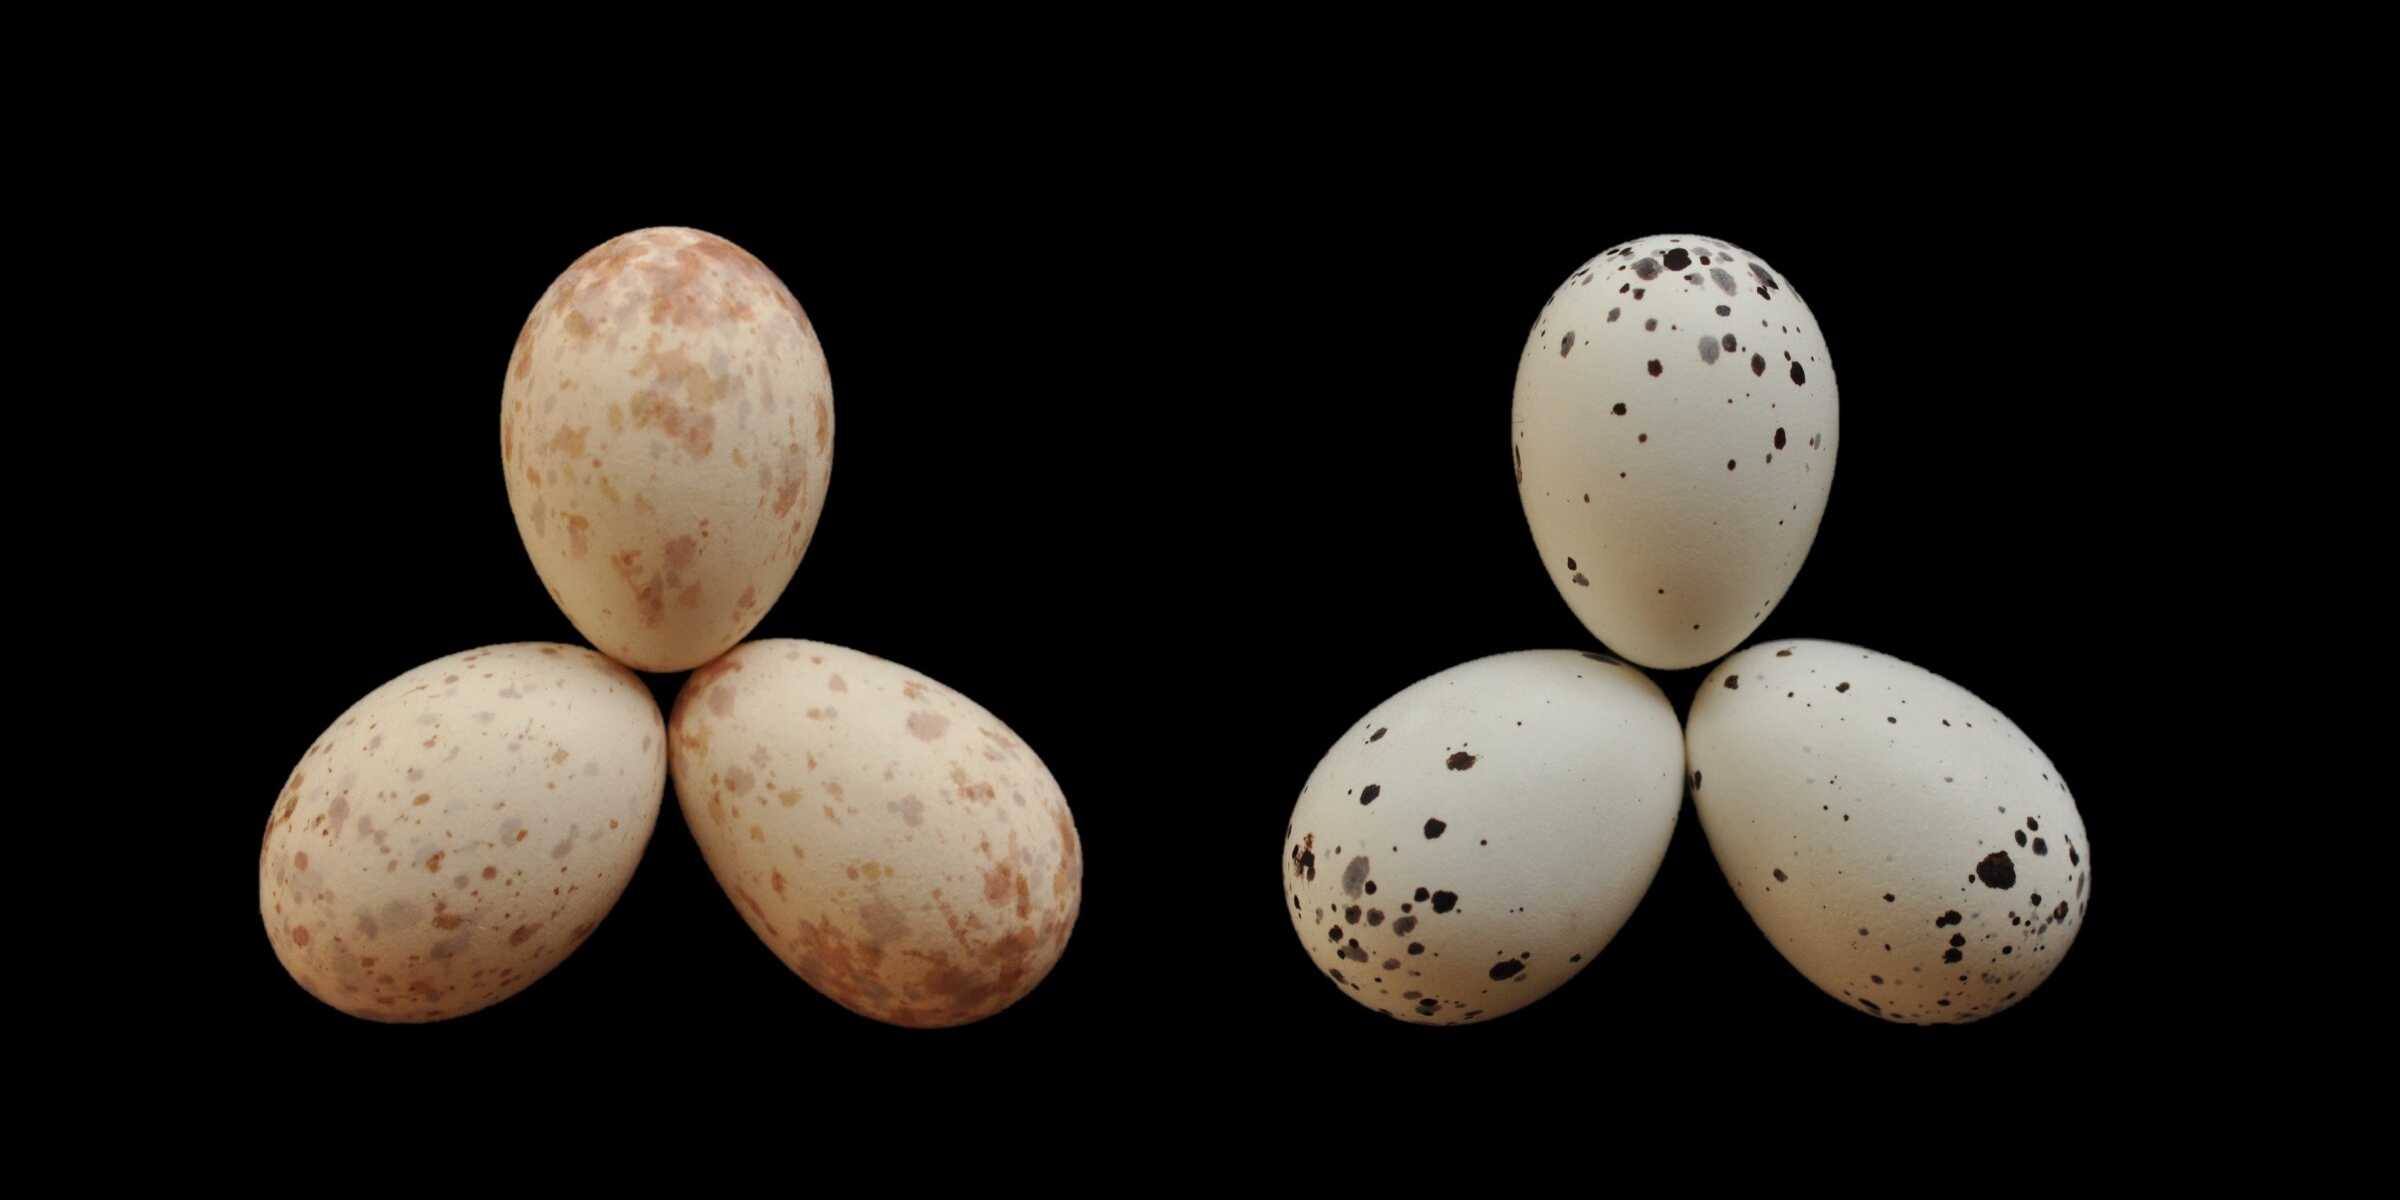 Африканские дронго научились «подписывать» свои яйца для борьбы с кукушками